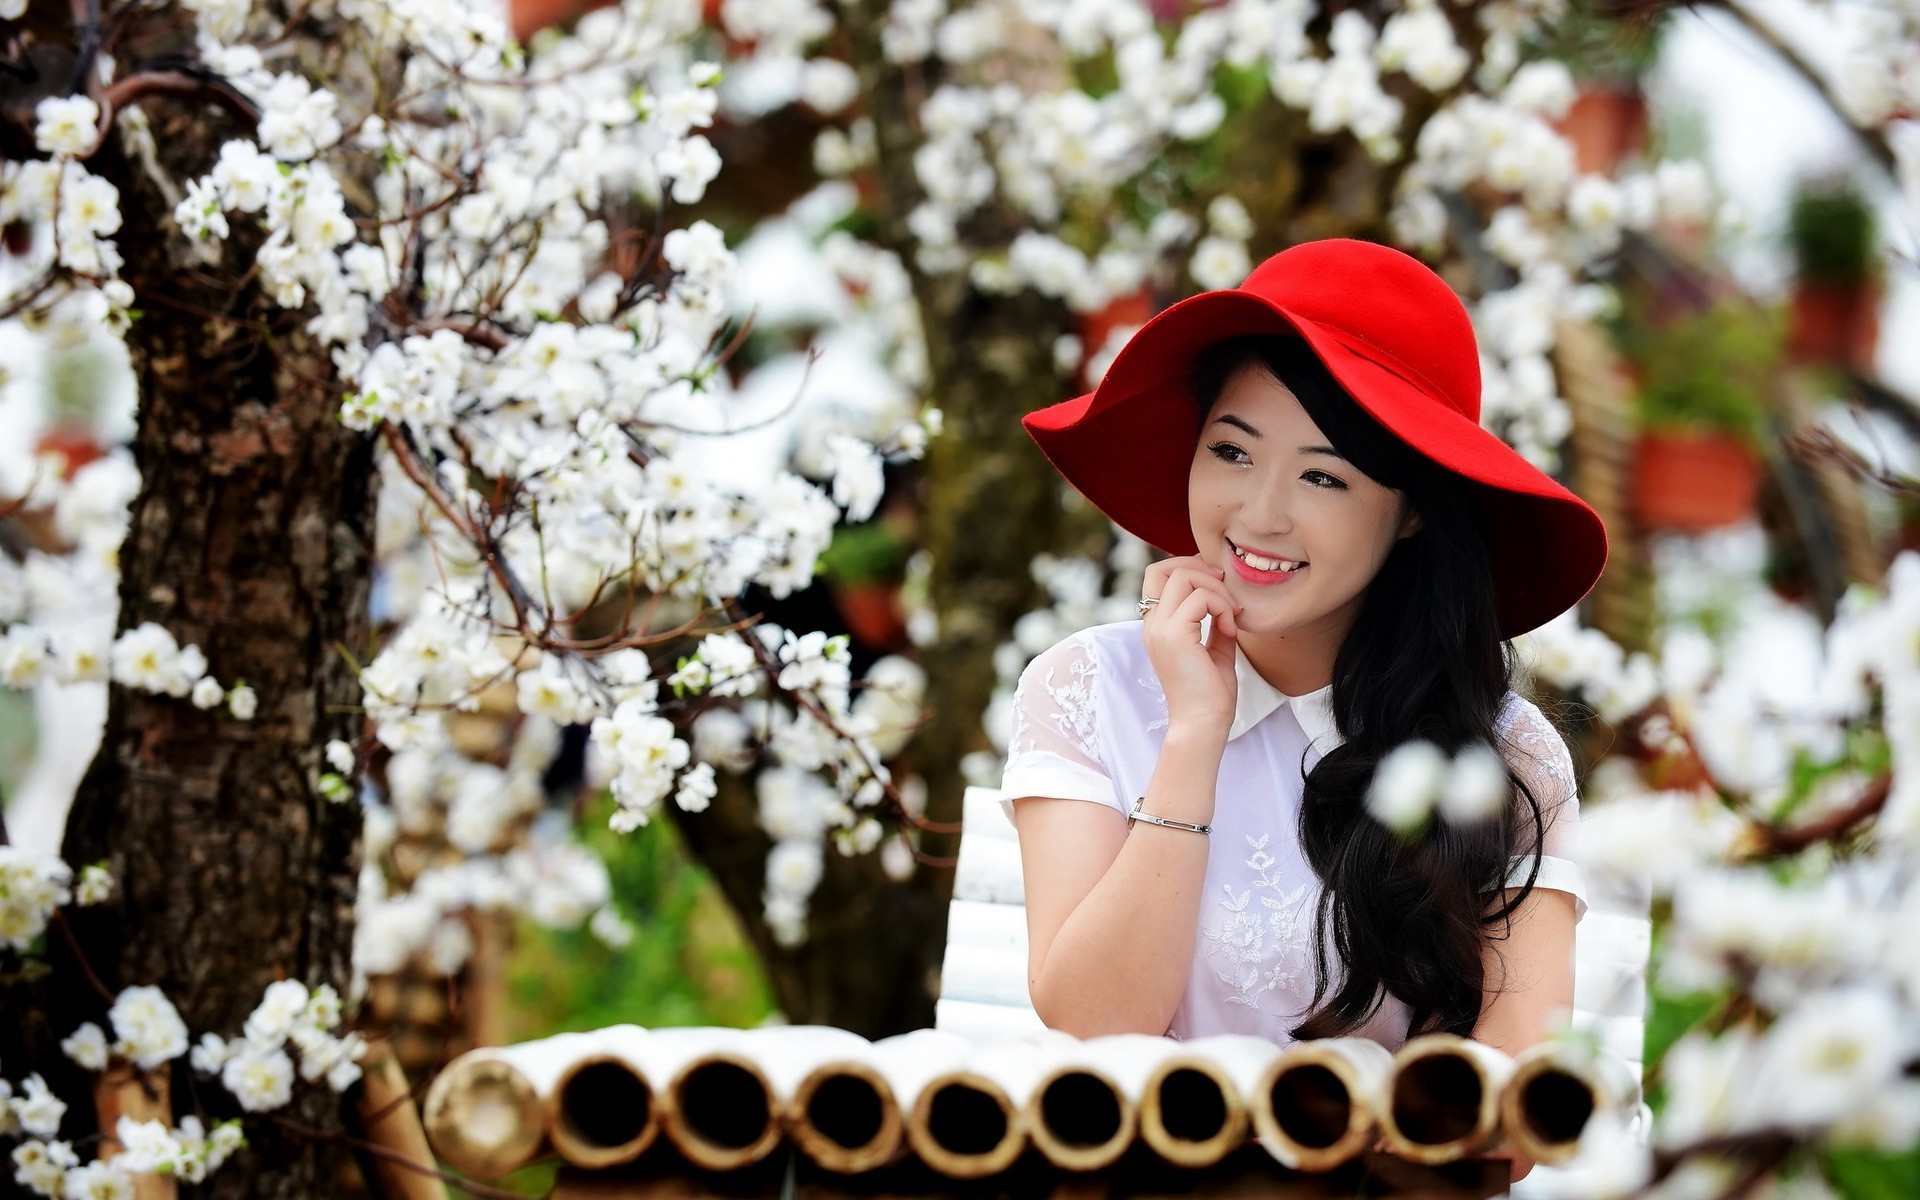 戴红帽子的女孩是亚洲人。